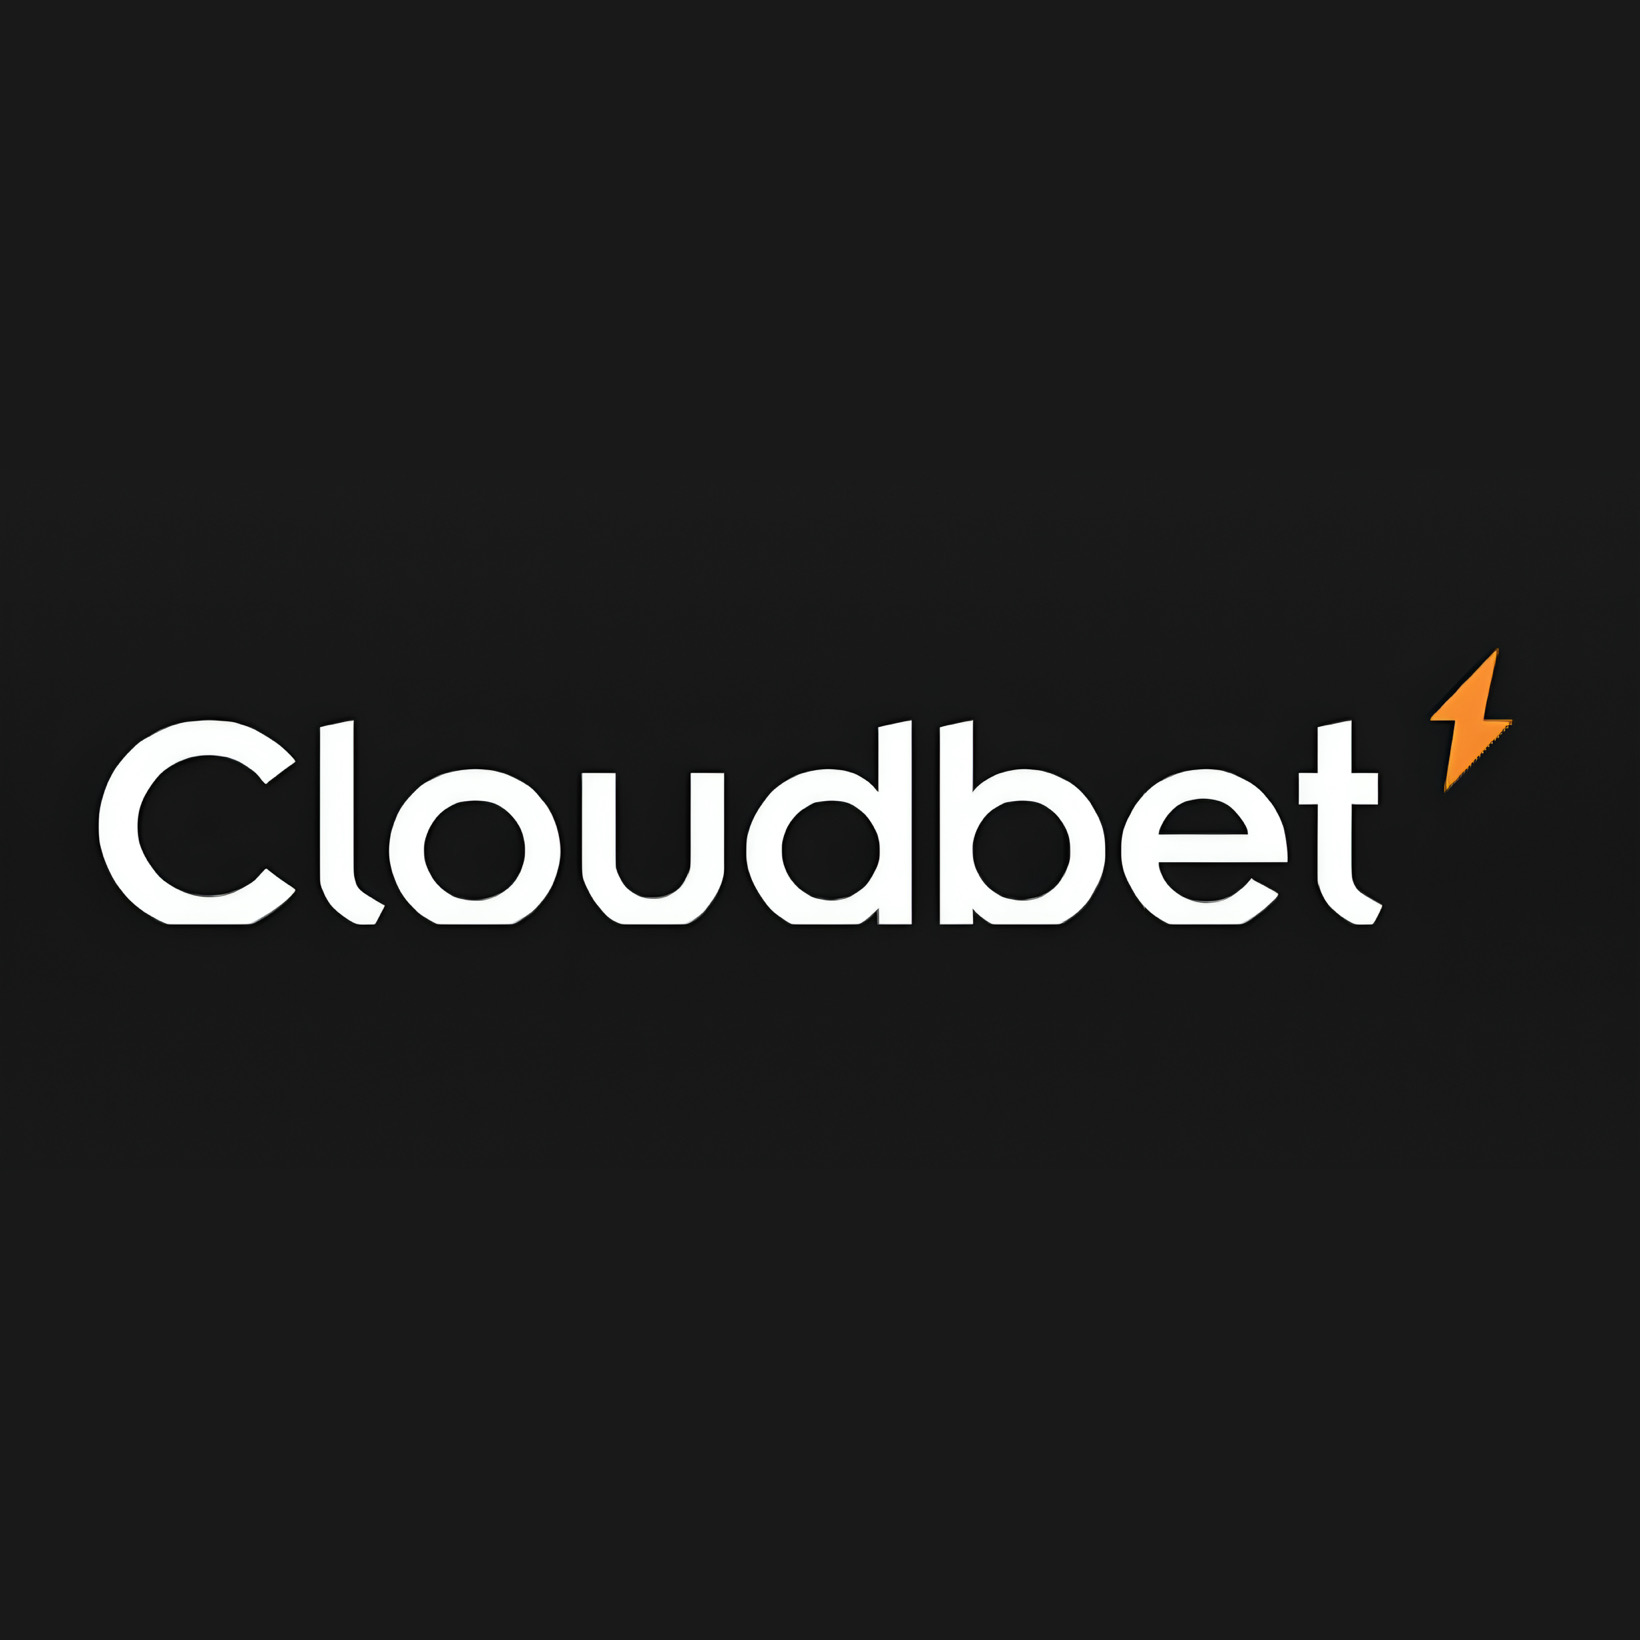 Cloudbet(クラウドベット)アイコンの画像